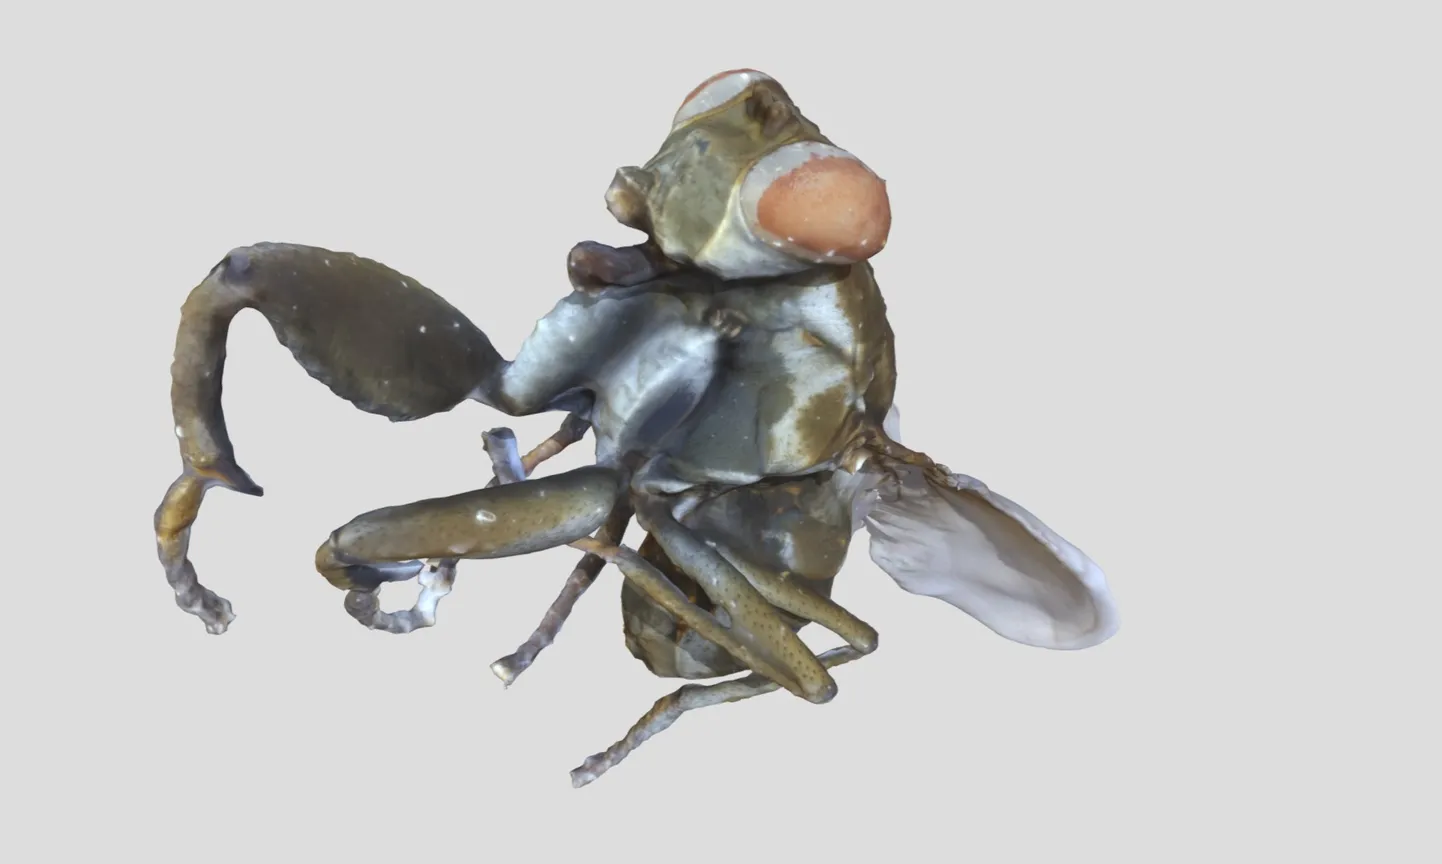 3D skann kiskjaliku välimusega sookärblasest Ochtera mantis, keda leidub ka Eestis. Tartu ülikooli loodusmuuseumi ja botaanikaaia projektiidee põhineb just selliste skaneeringute arendamisel ja kogumisel.